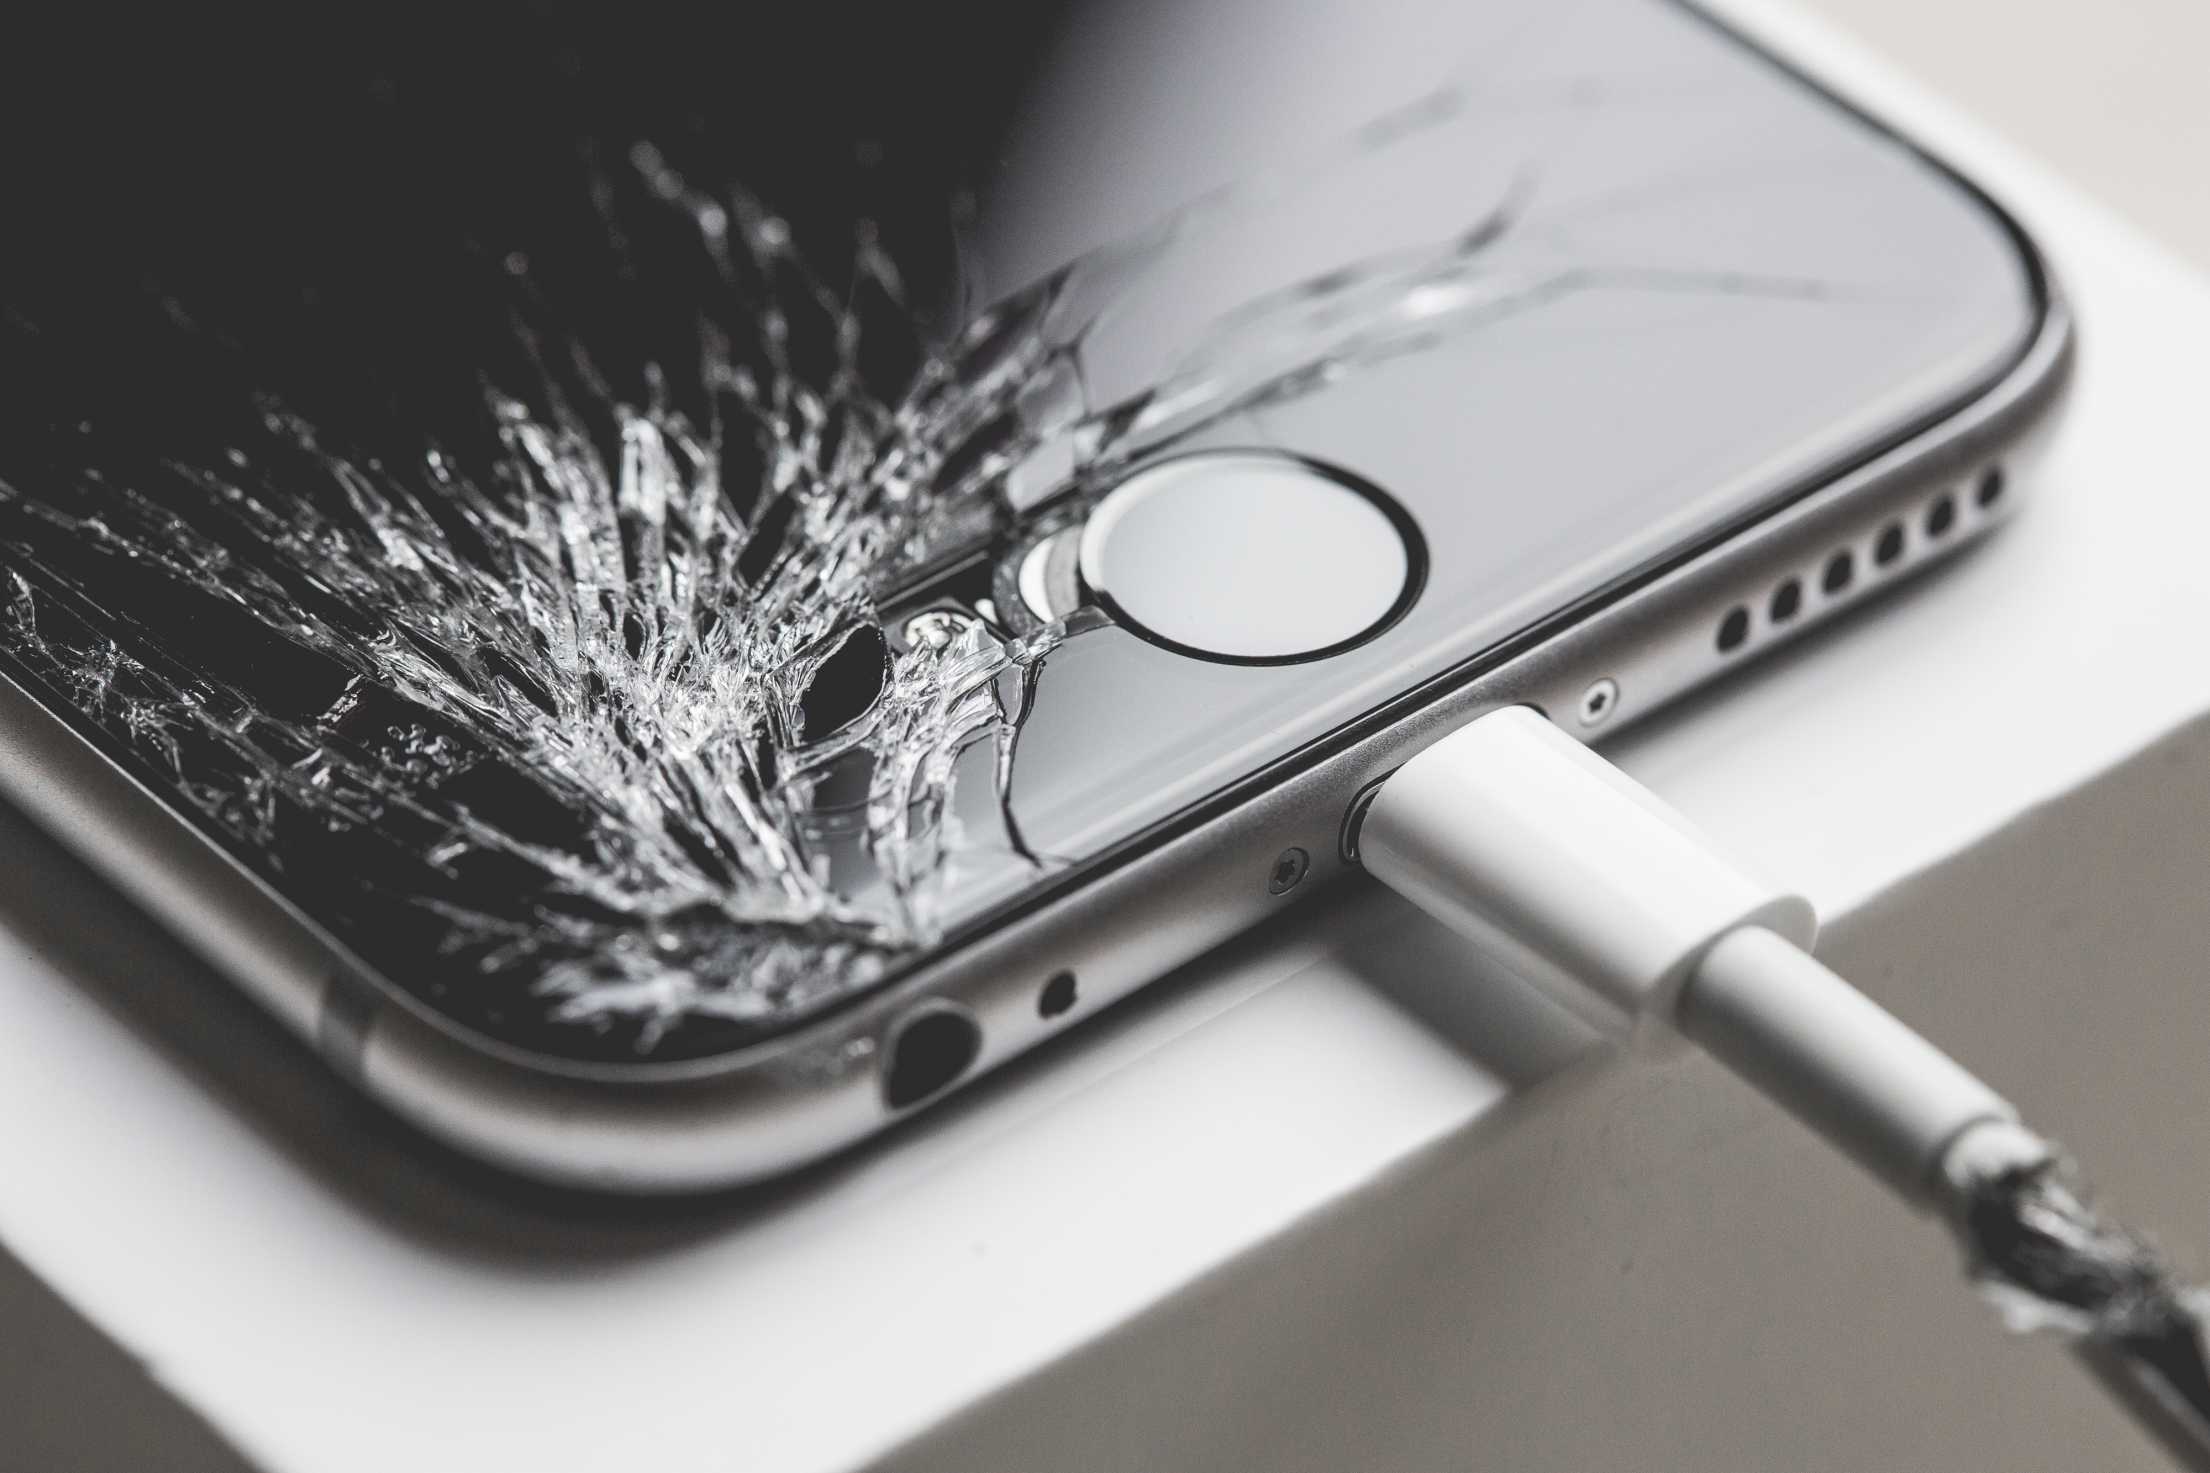 Апдейт iOS 11.0.3 показал, что Apple может отключать свои телефоны с неоригинальным дисплеем - 1